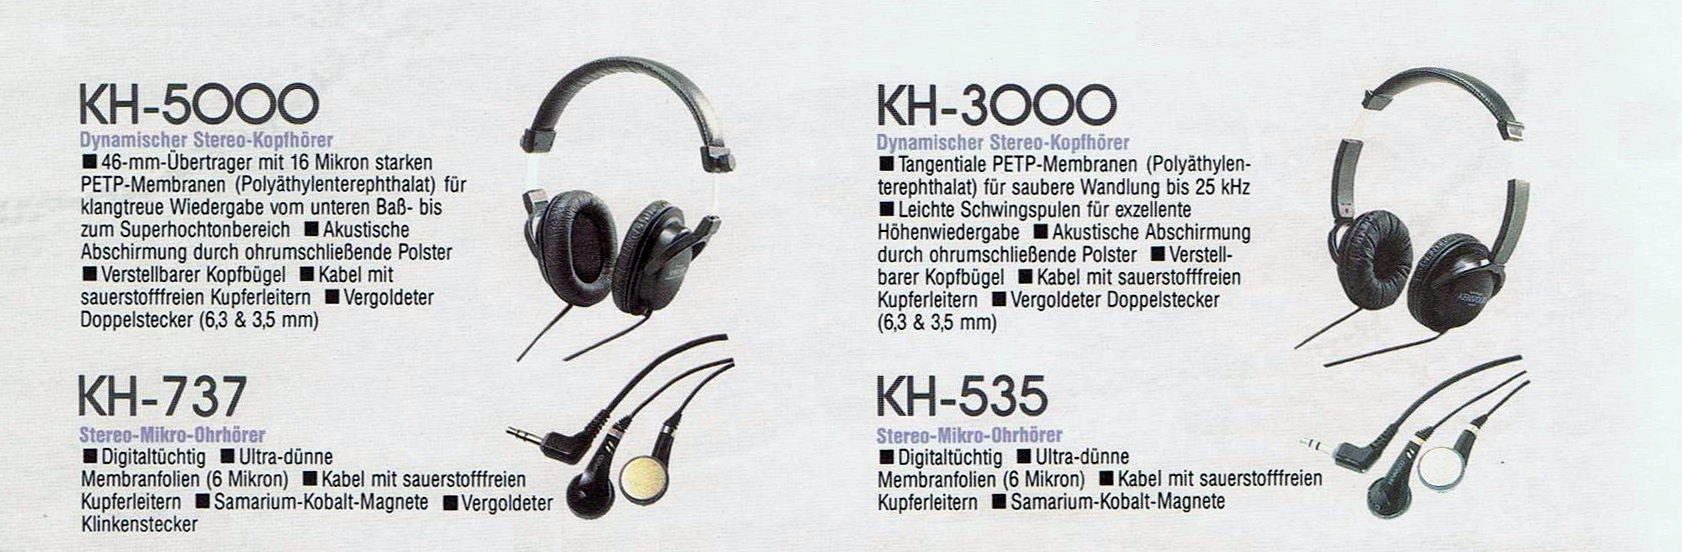 Kenwood KH-535-737-3000-5000-Prospekt-1990.jpg